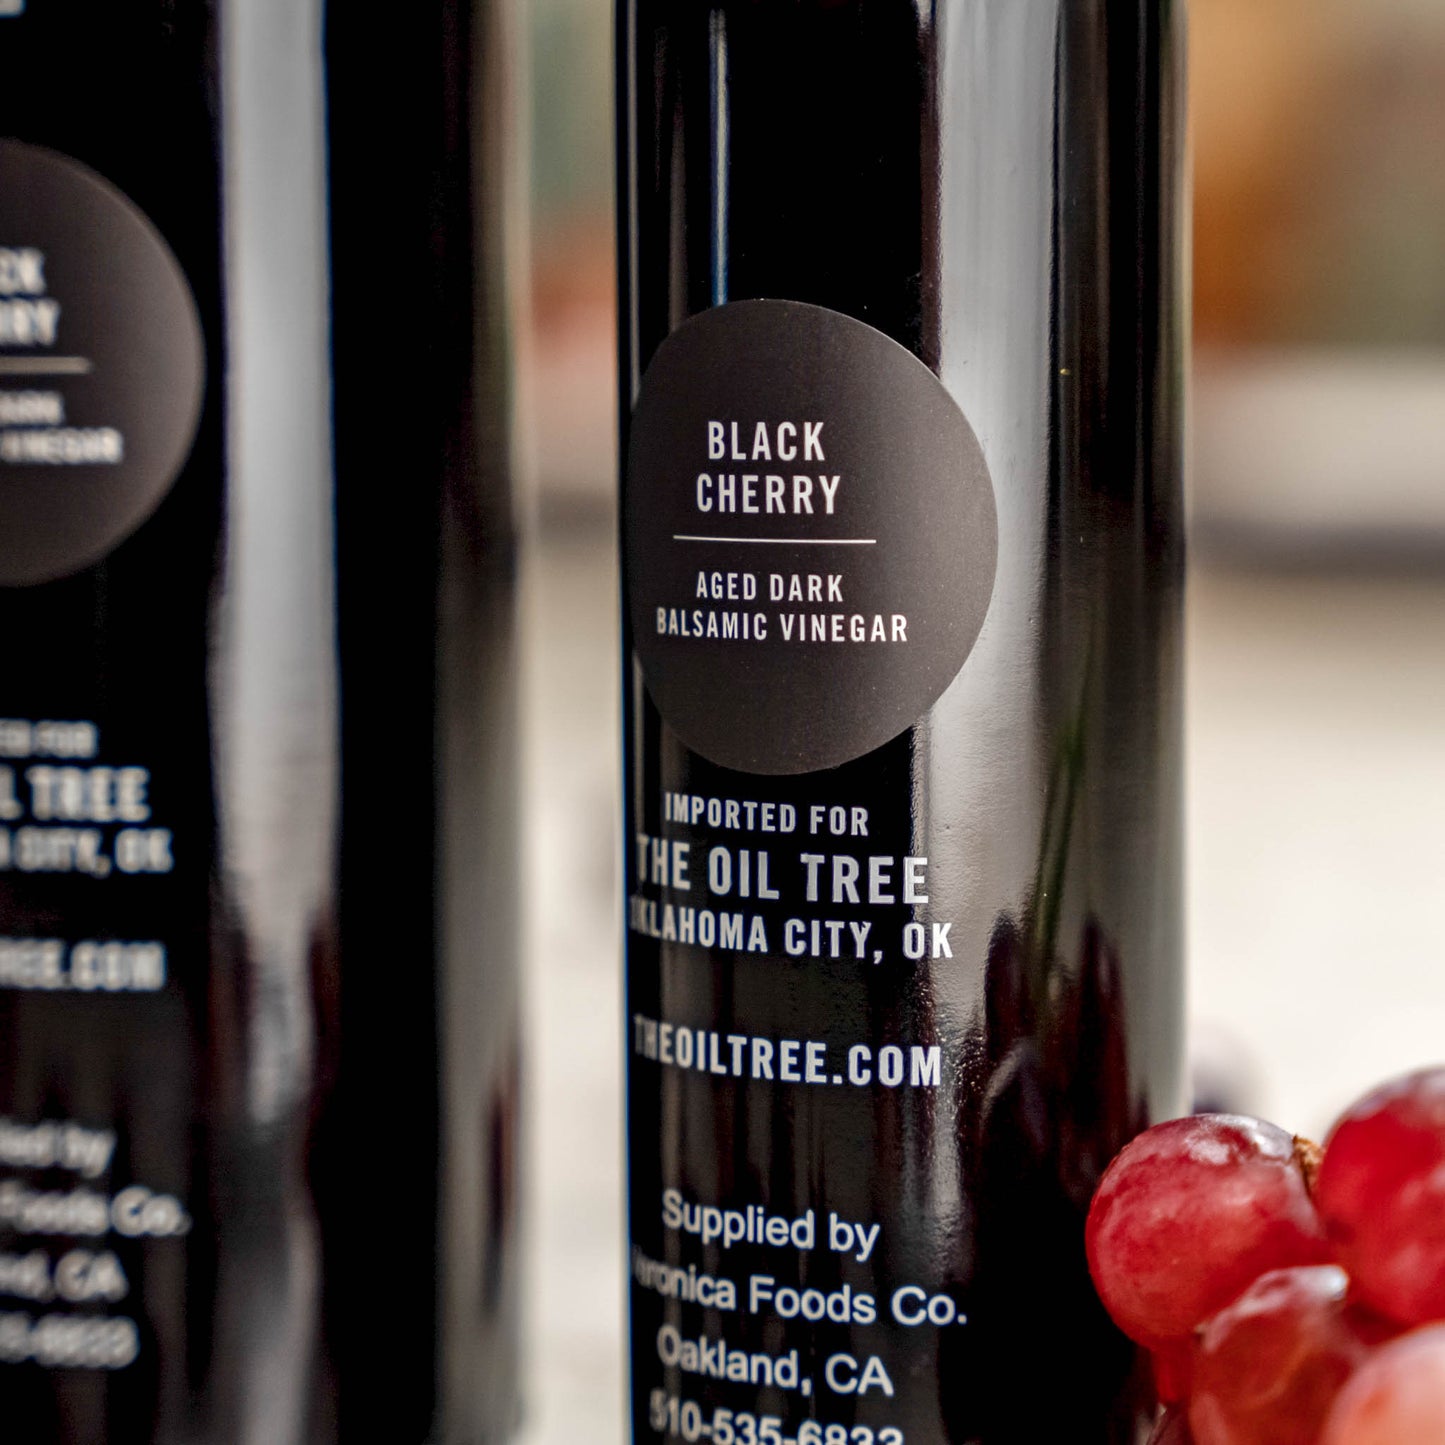 Black Cherry dark balsamic vinegar